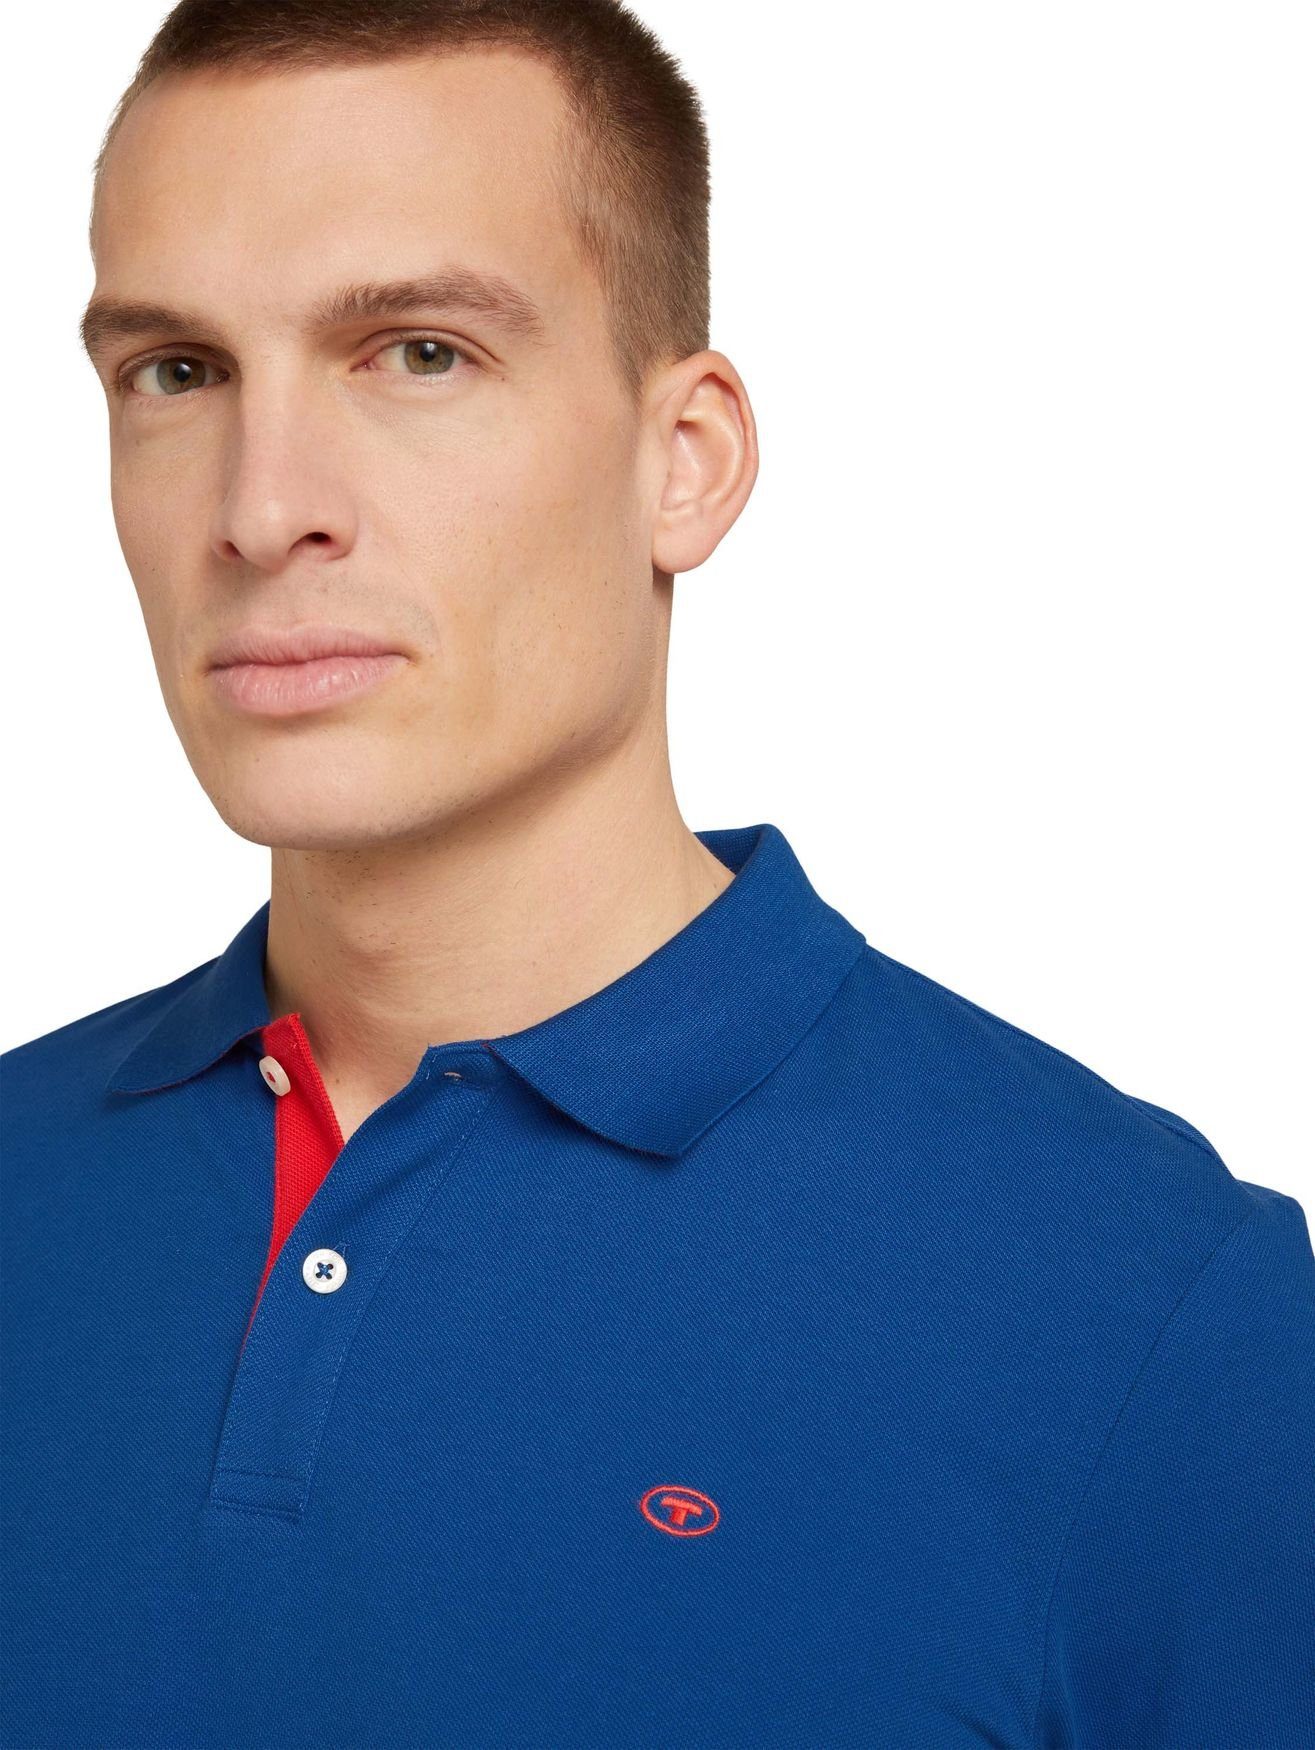 POLO Poloshirt 5339 Polo Blau TAILOR Shirt BASIC TOM in